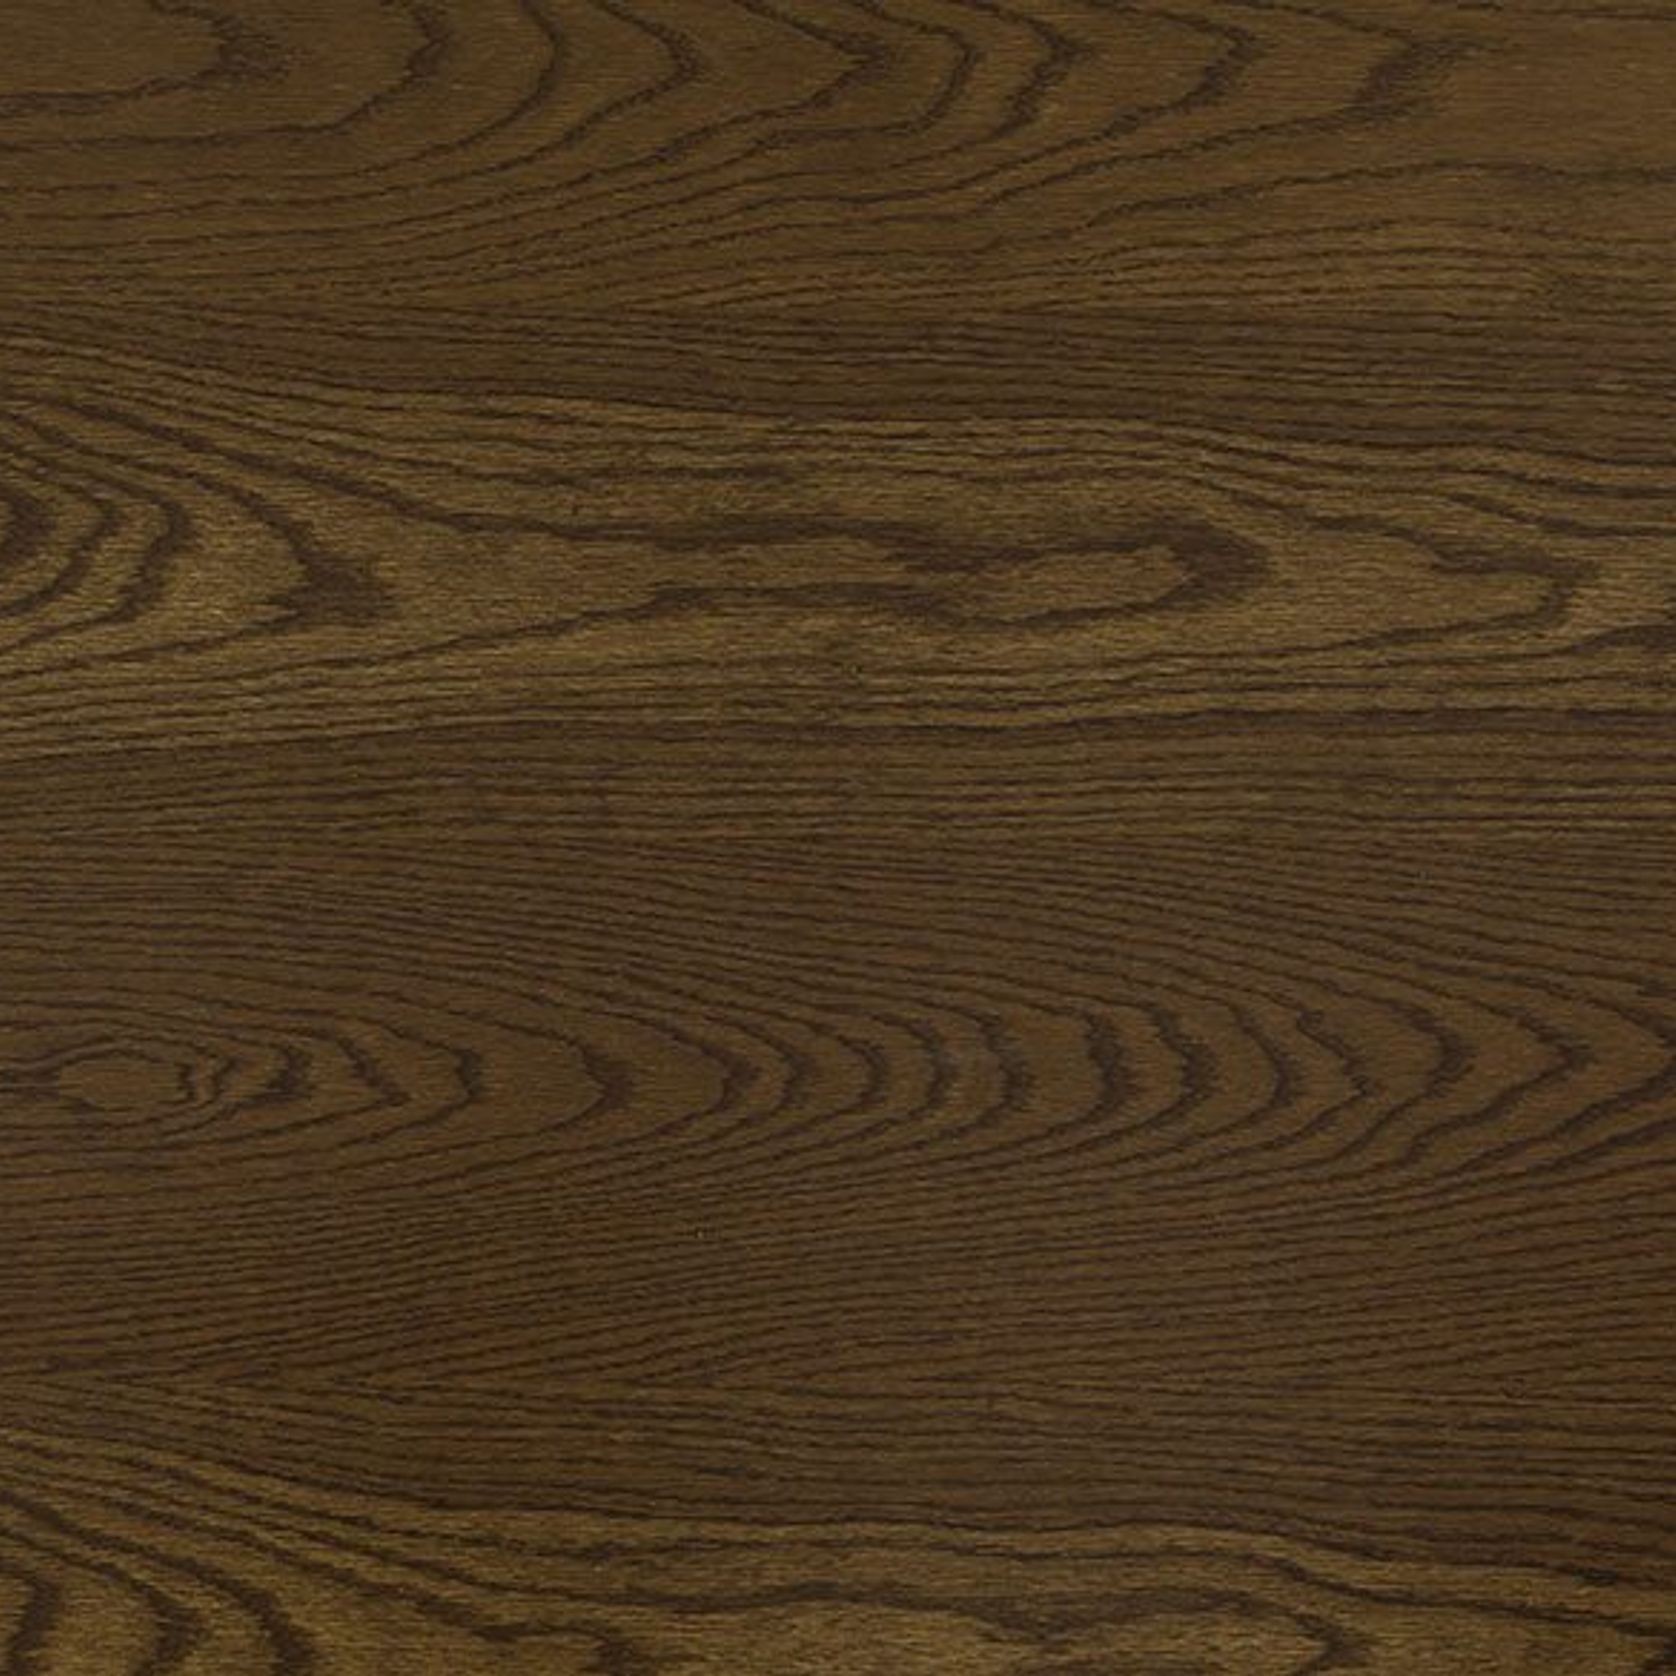 European Oak Flooring - Smokey - Laminate gallery detail image